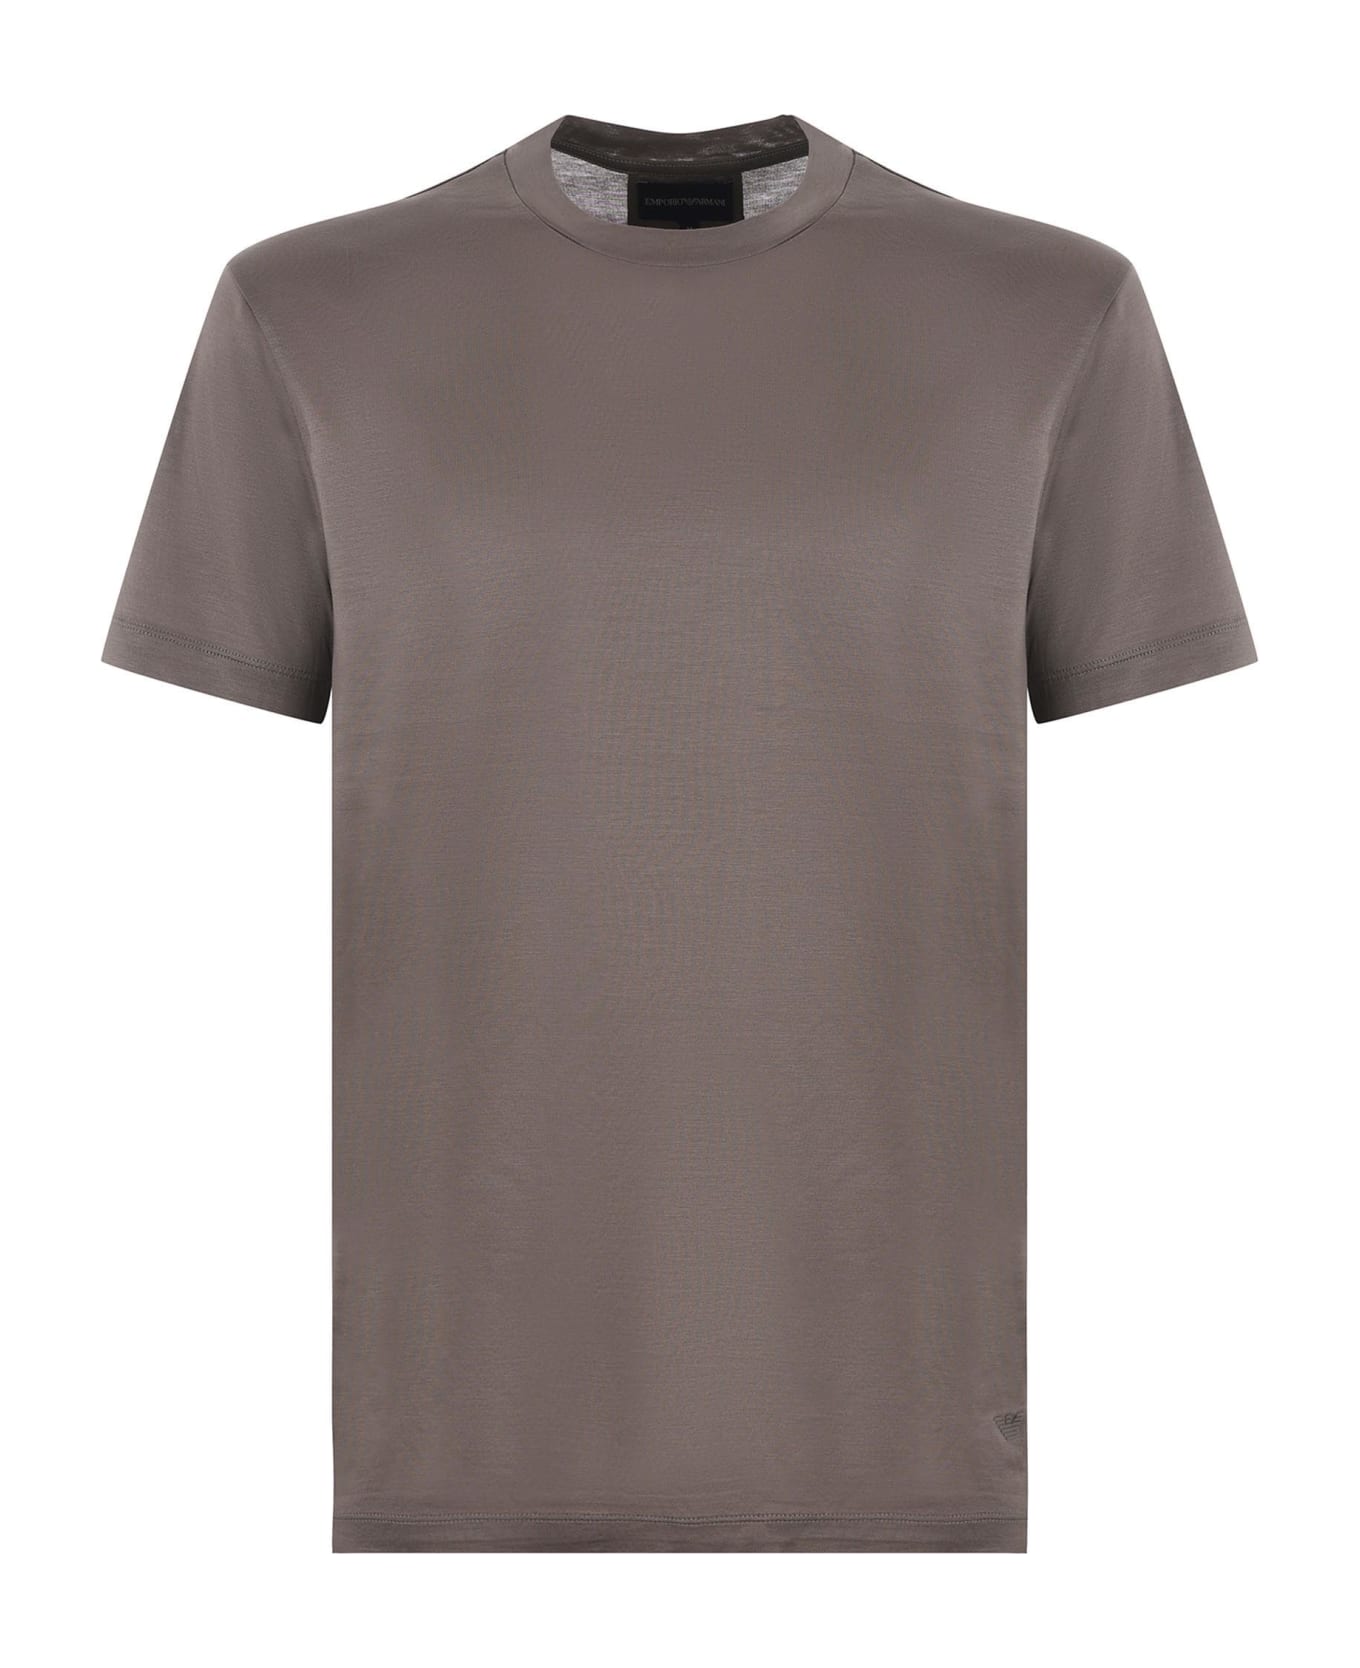 Emporio Armani T-shirt - Tortora scuro